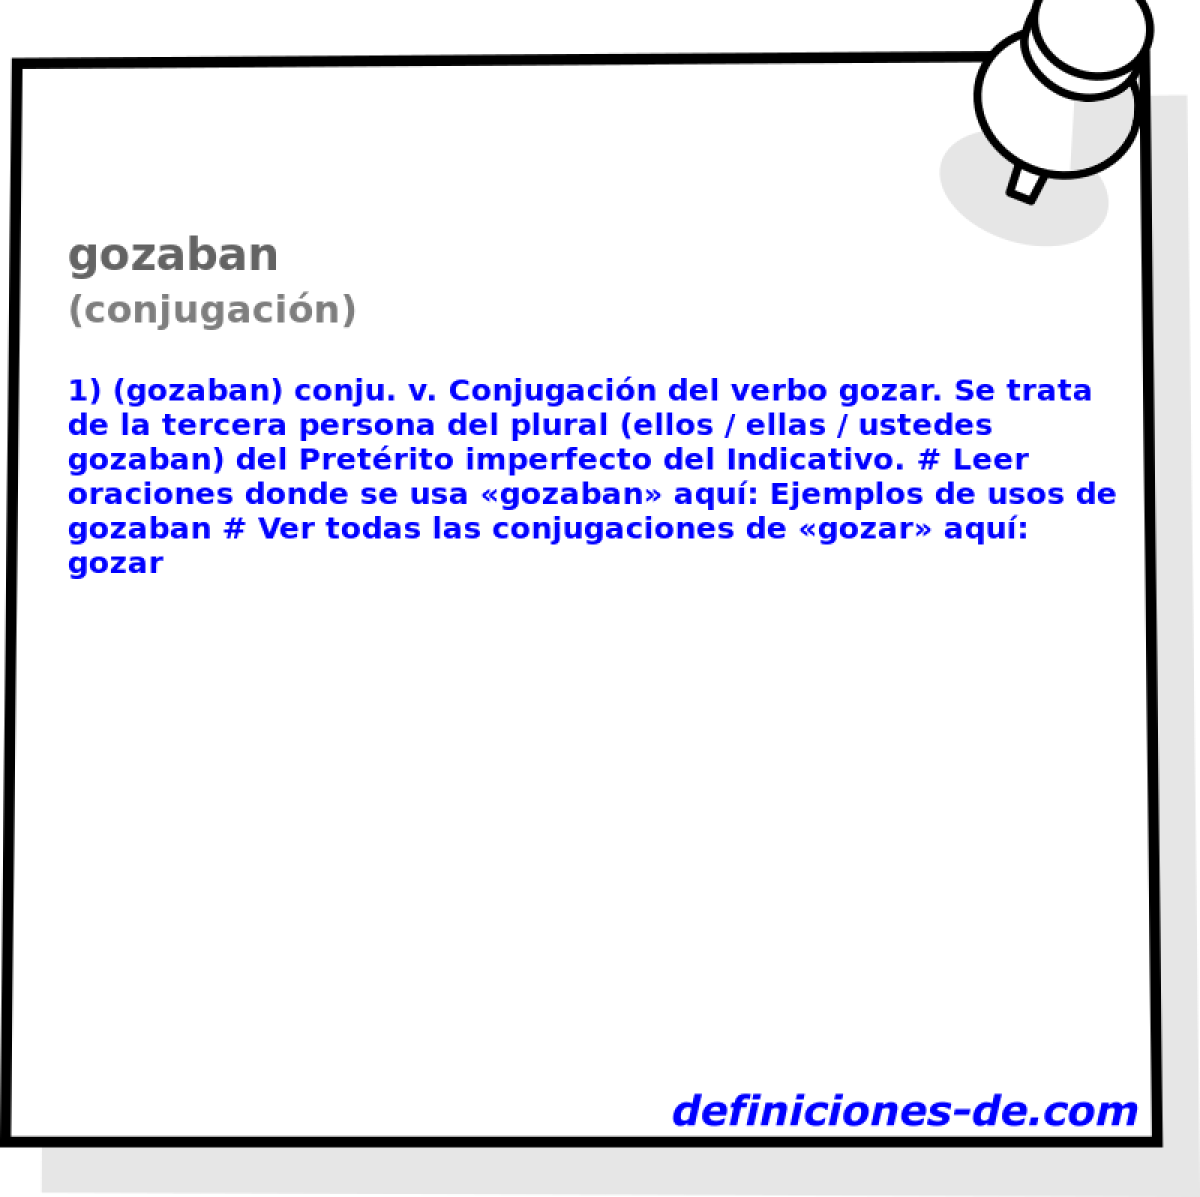 gozaban (conjugacin)